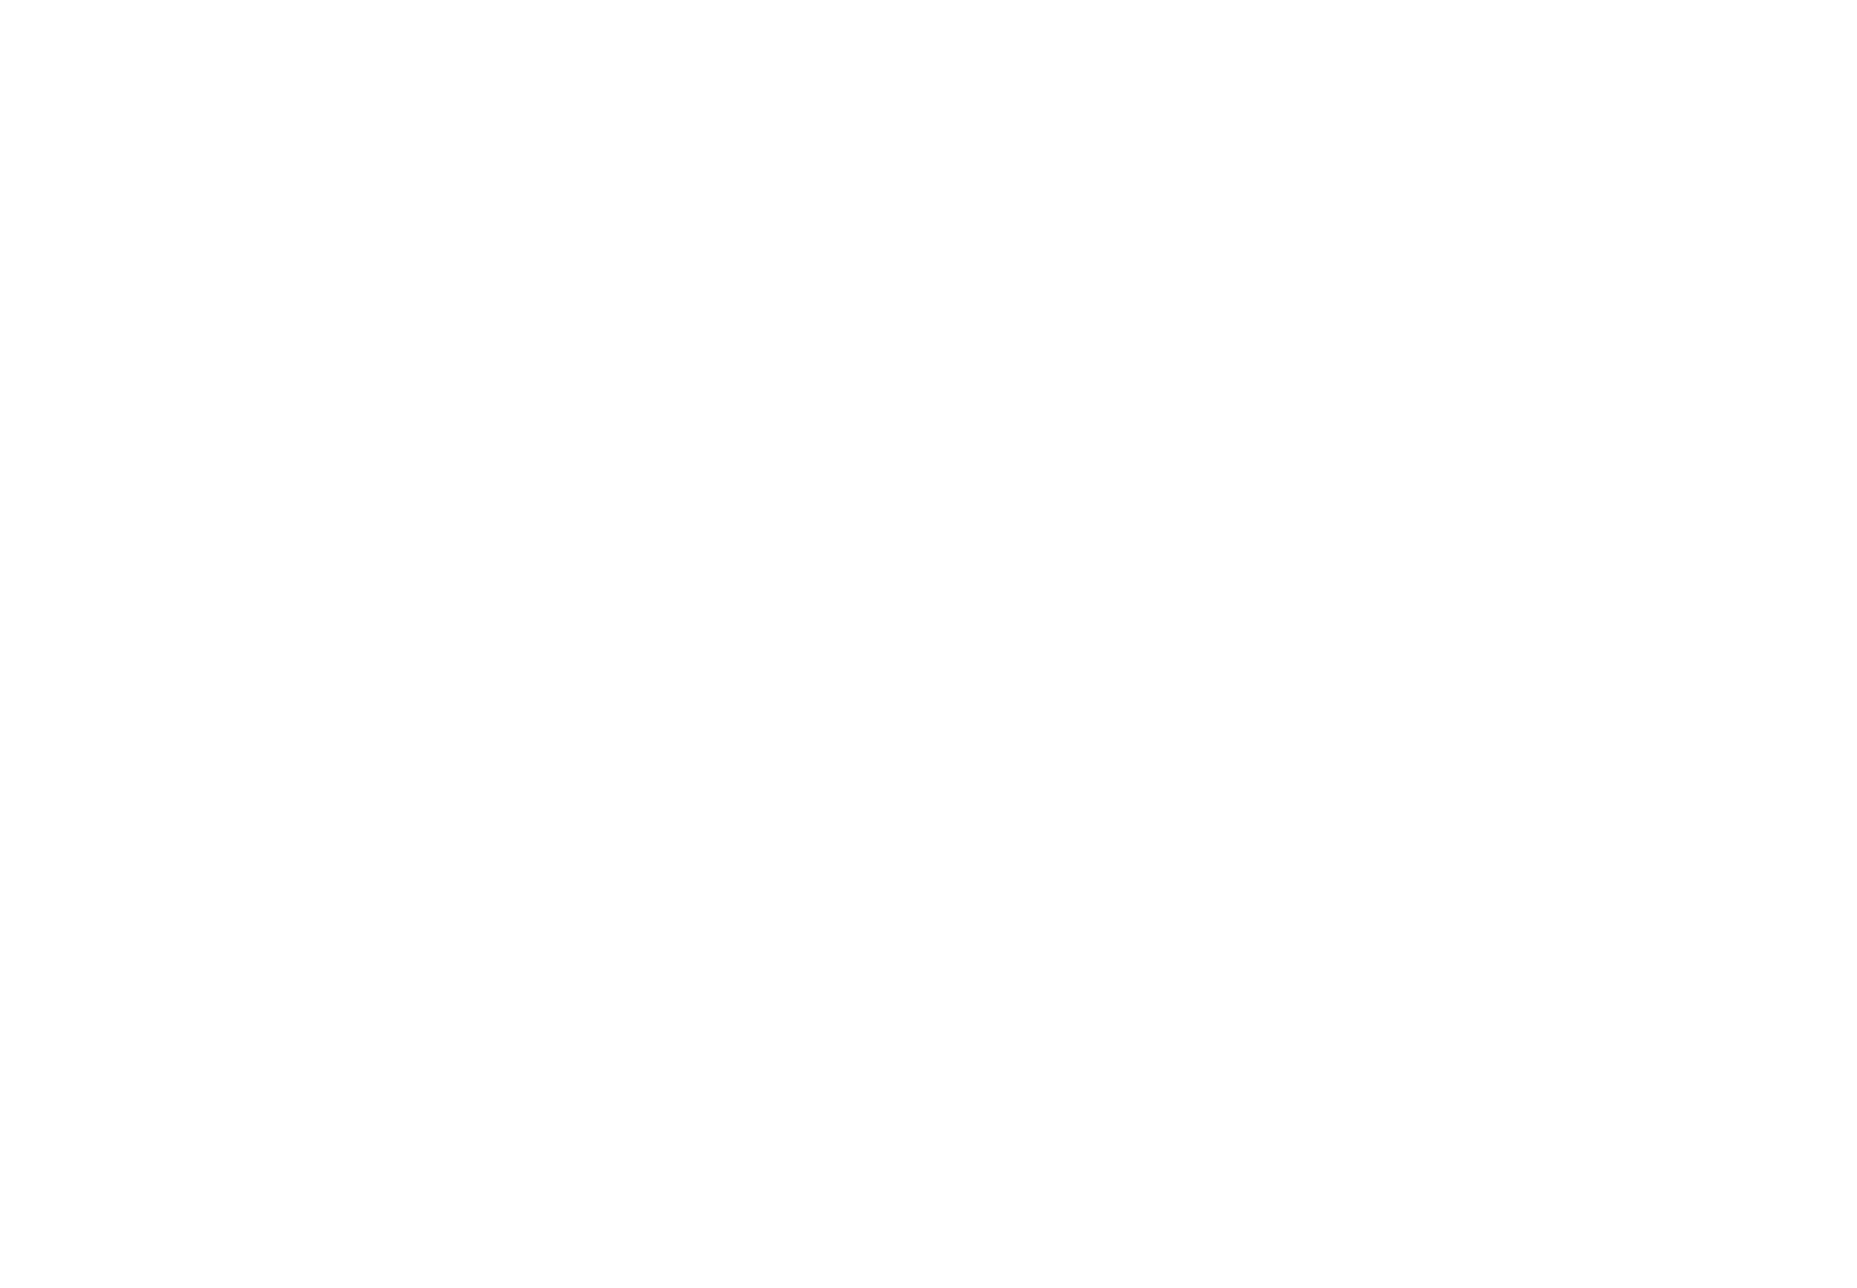 The Atom Ant Show logo